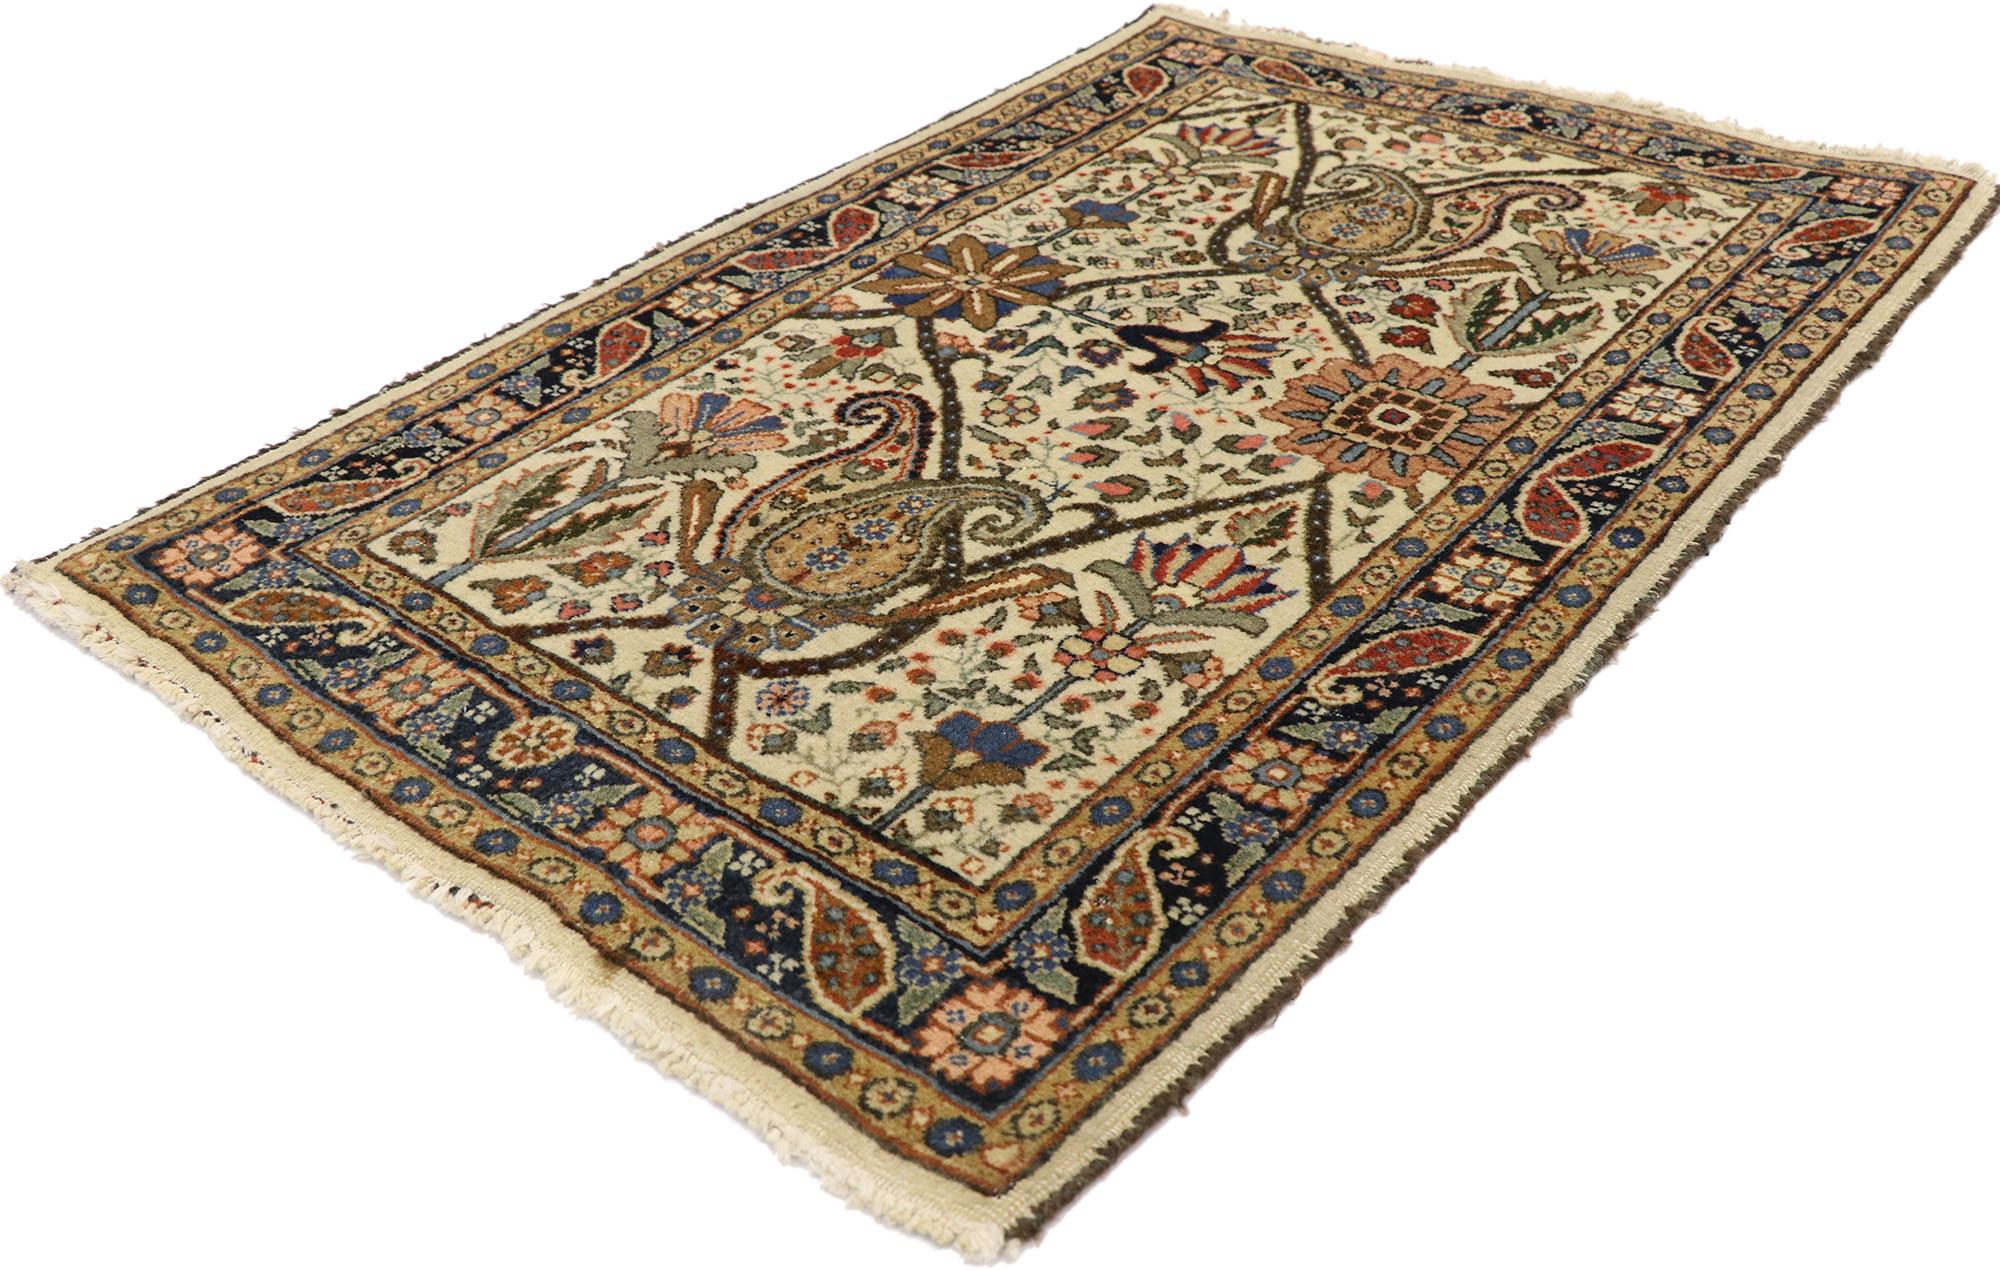 78004 Tapis persan vintage Tabriz, 02'05 x 03'09. Dans le tissage de ce tapis persan Tabriz vintage en laine noué à la main, la tradition rencontre la sophistication dans une danse harmonieuse d'élégance. Sa palette de tons de terre et ses motifs